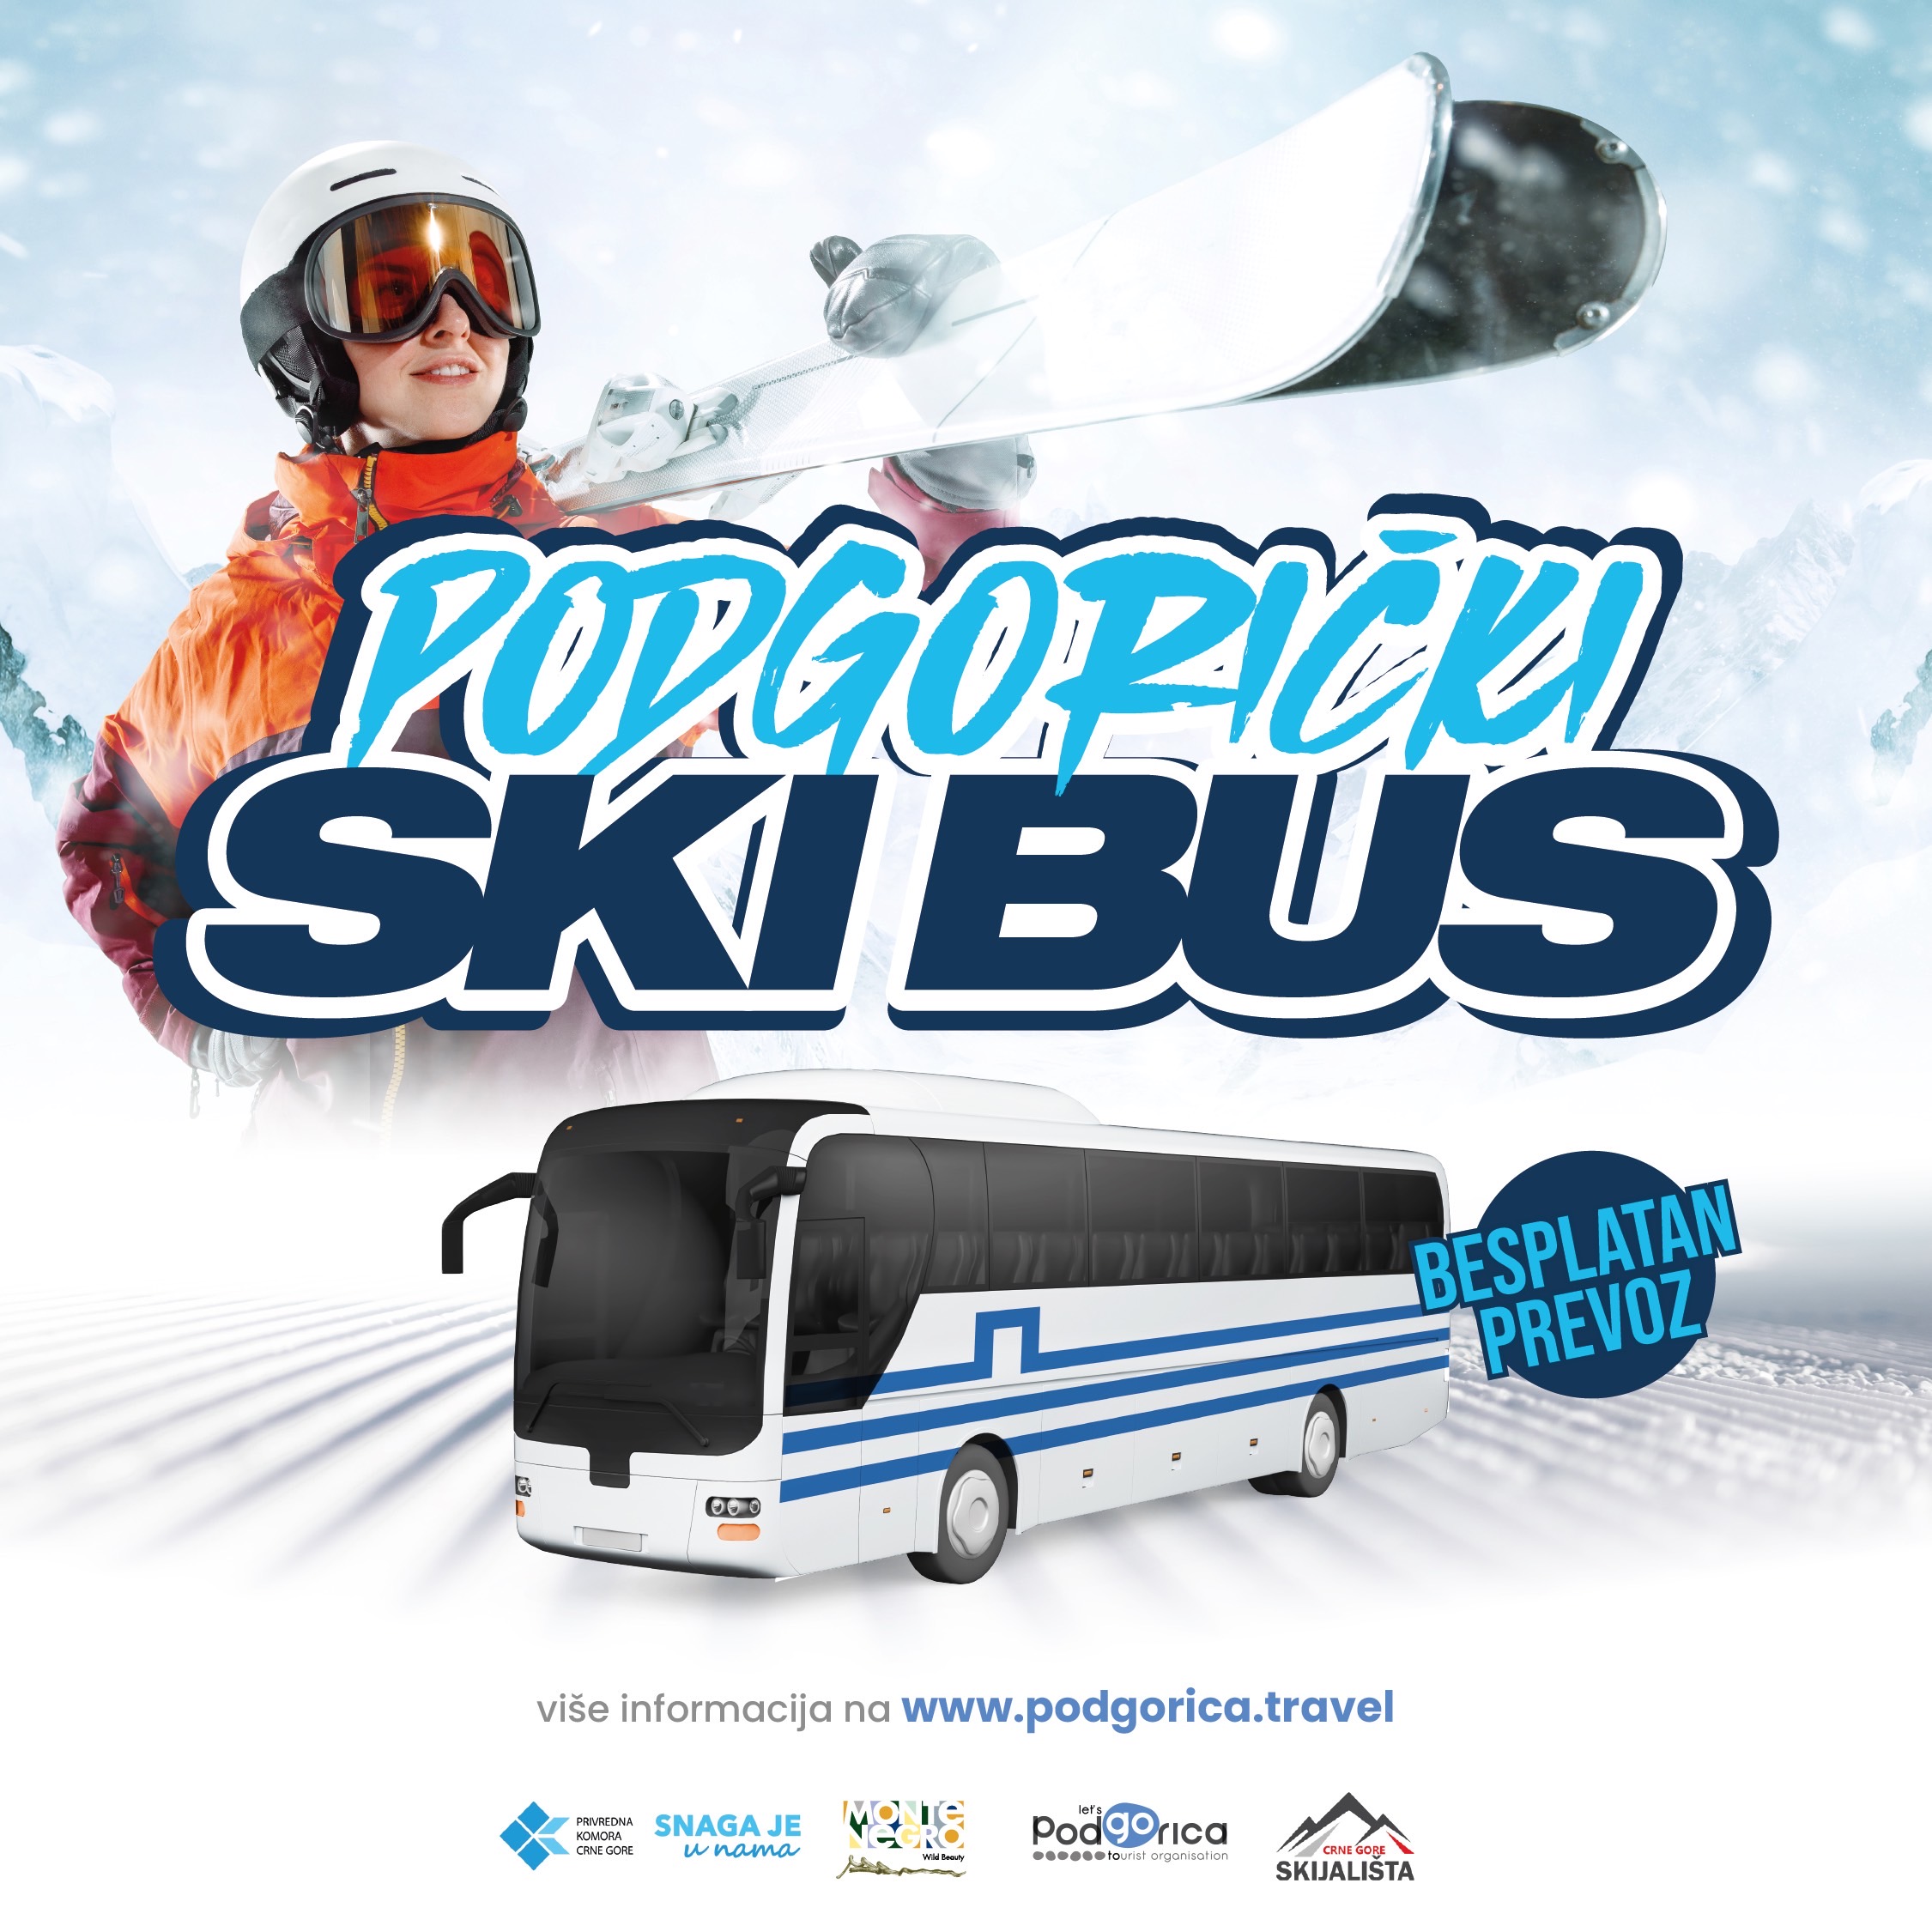 Veliko interesovanje za Podgorički Ski bus